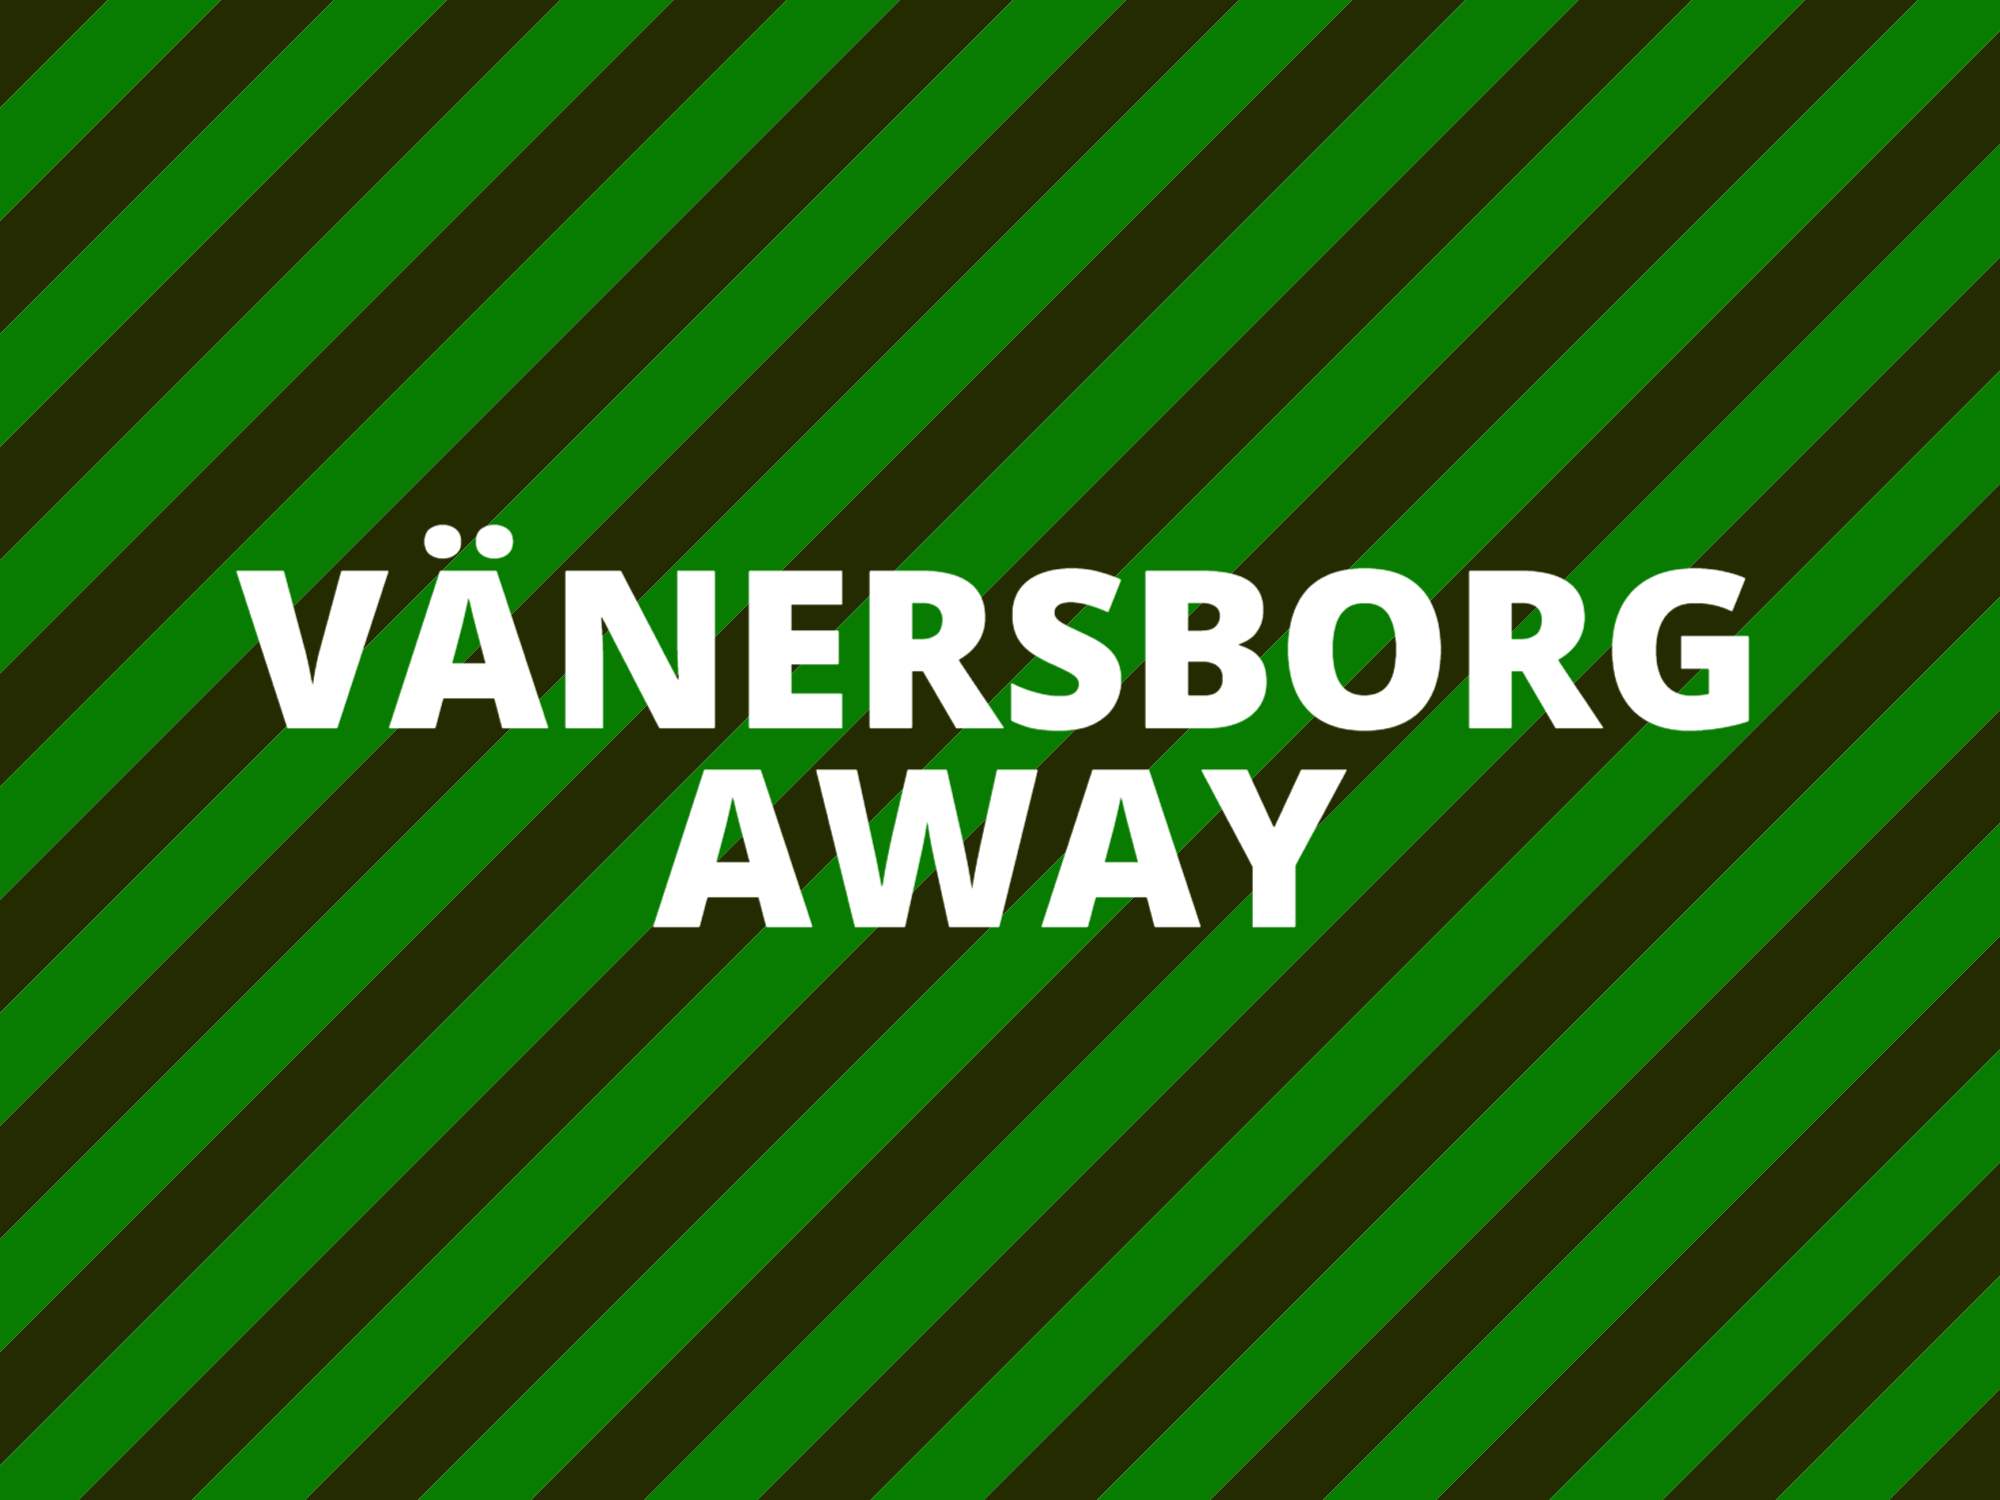 Vänersborg Away